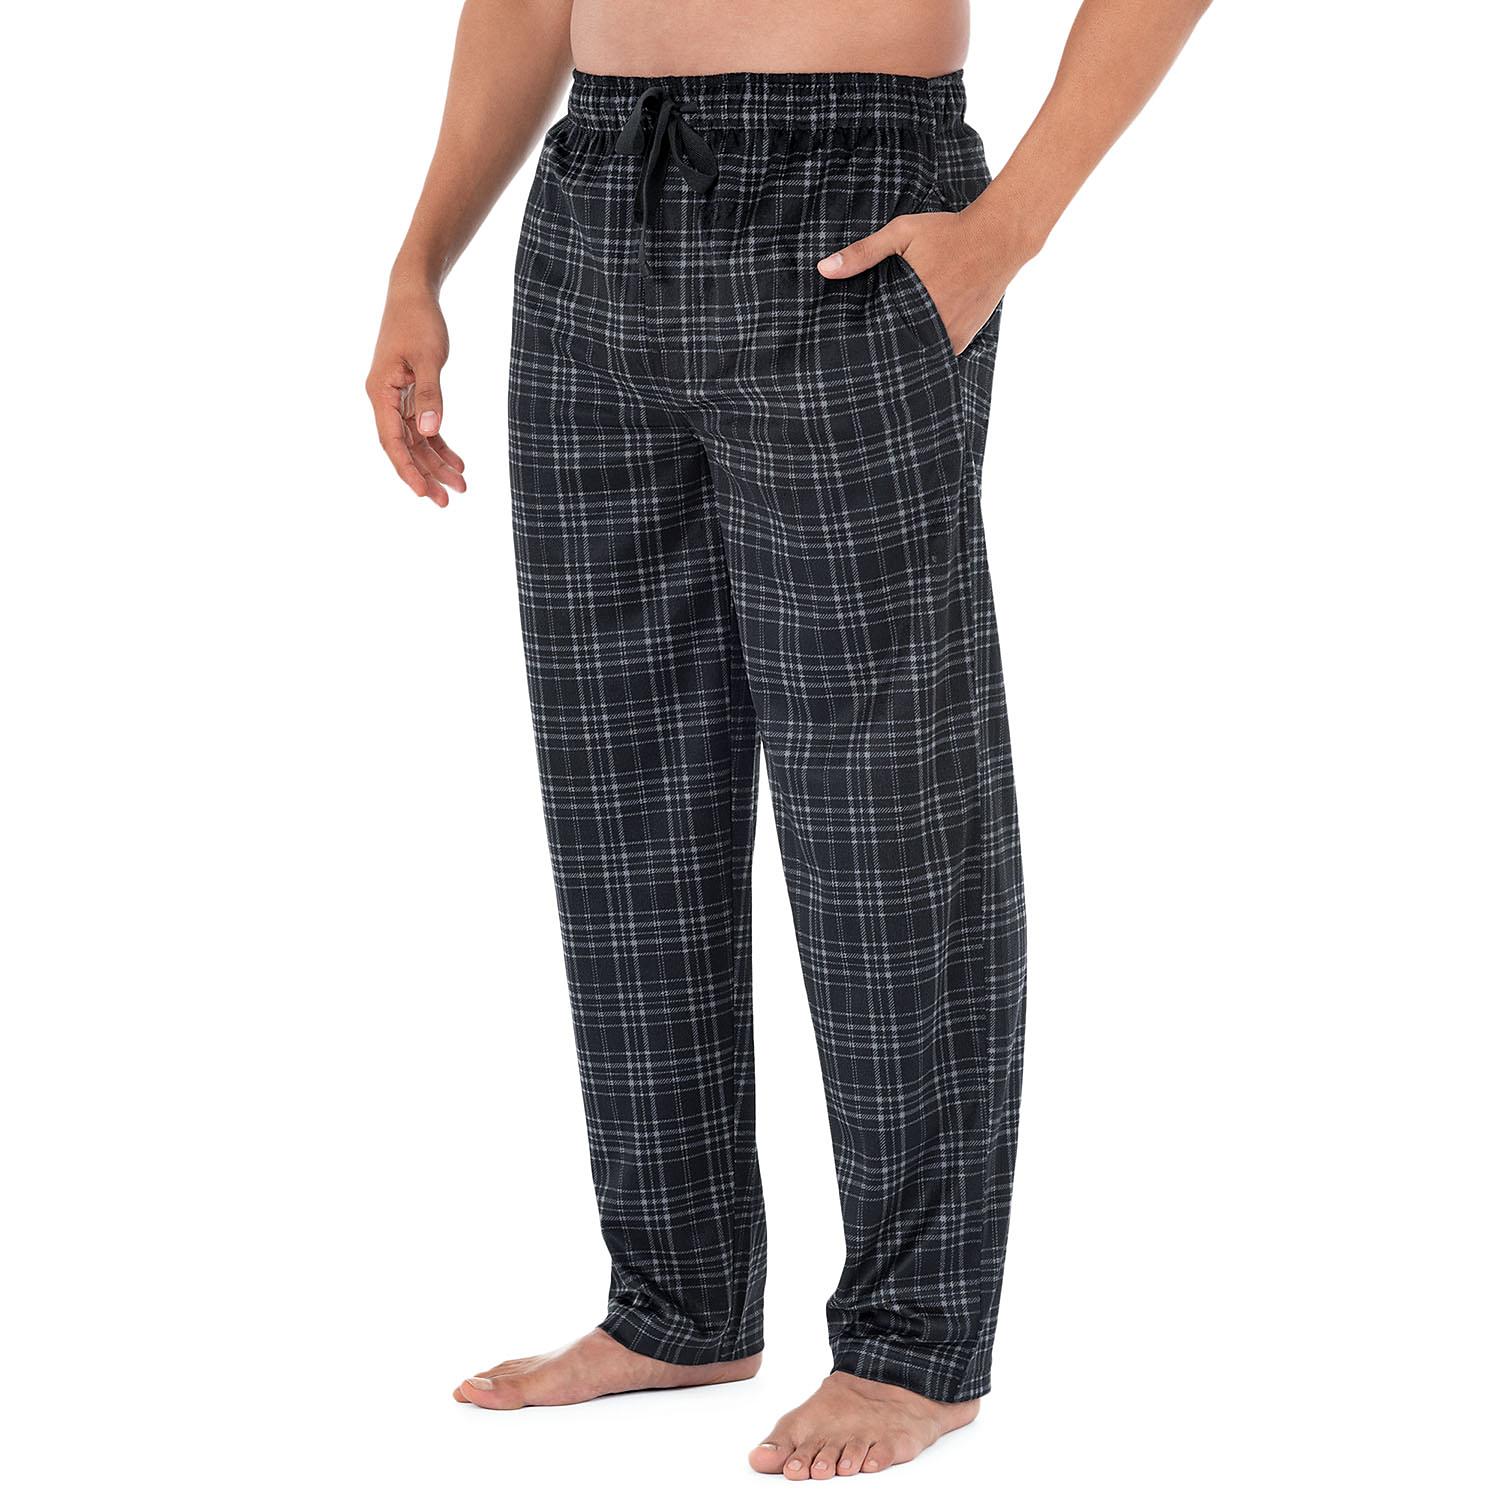 Izod Men's Micro Fleece Pajama Pant in Black, Size Small - image 2 of 3